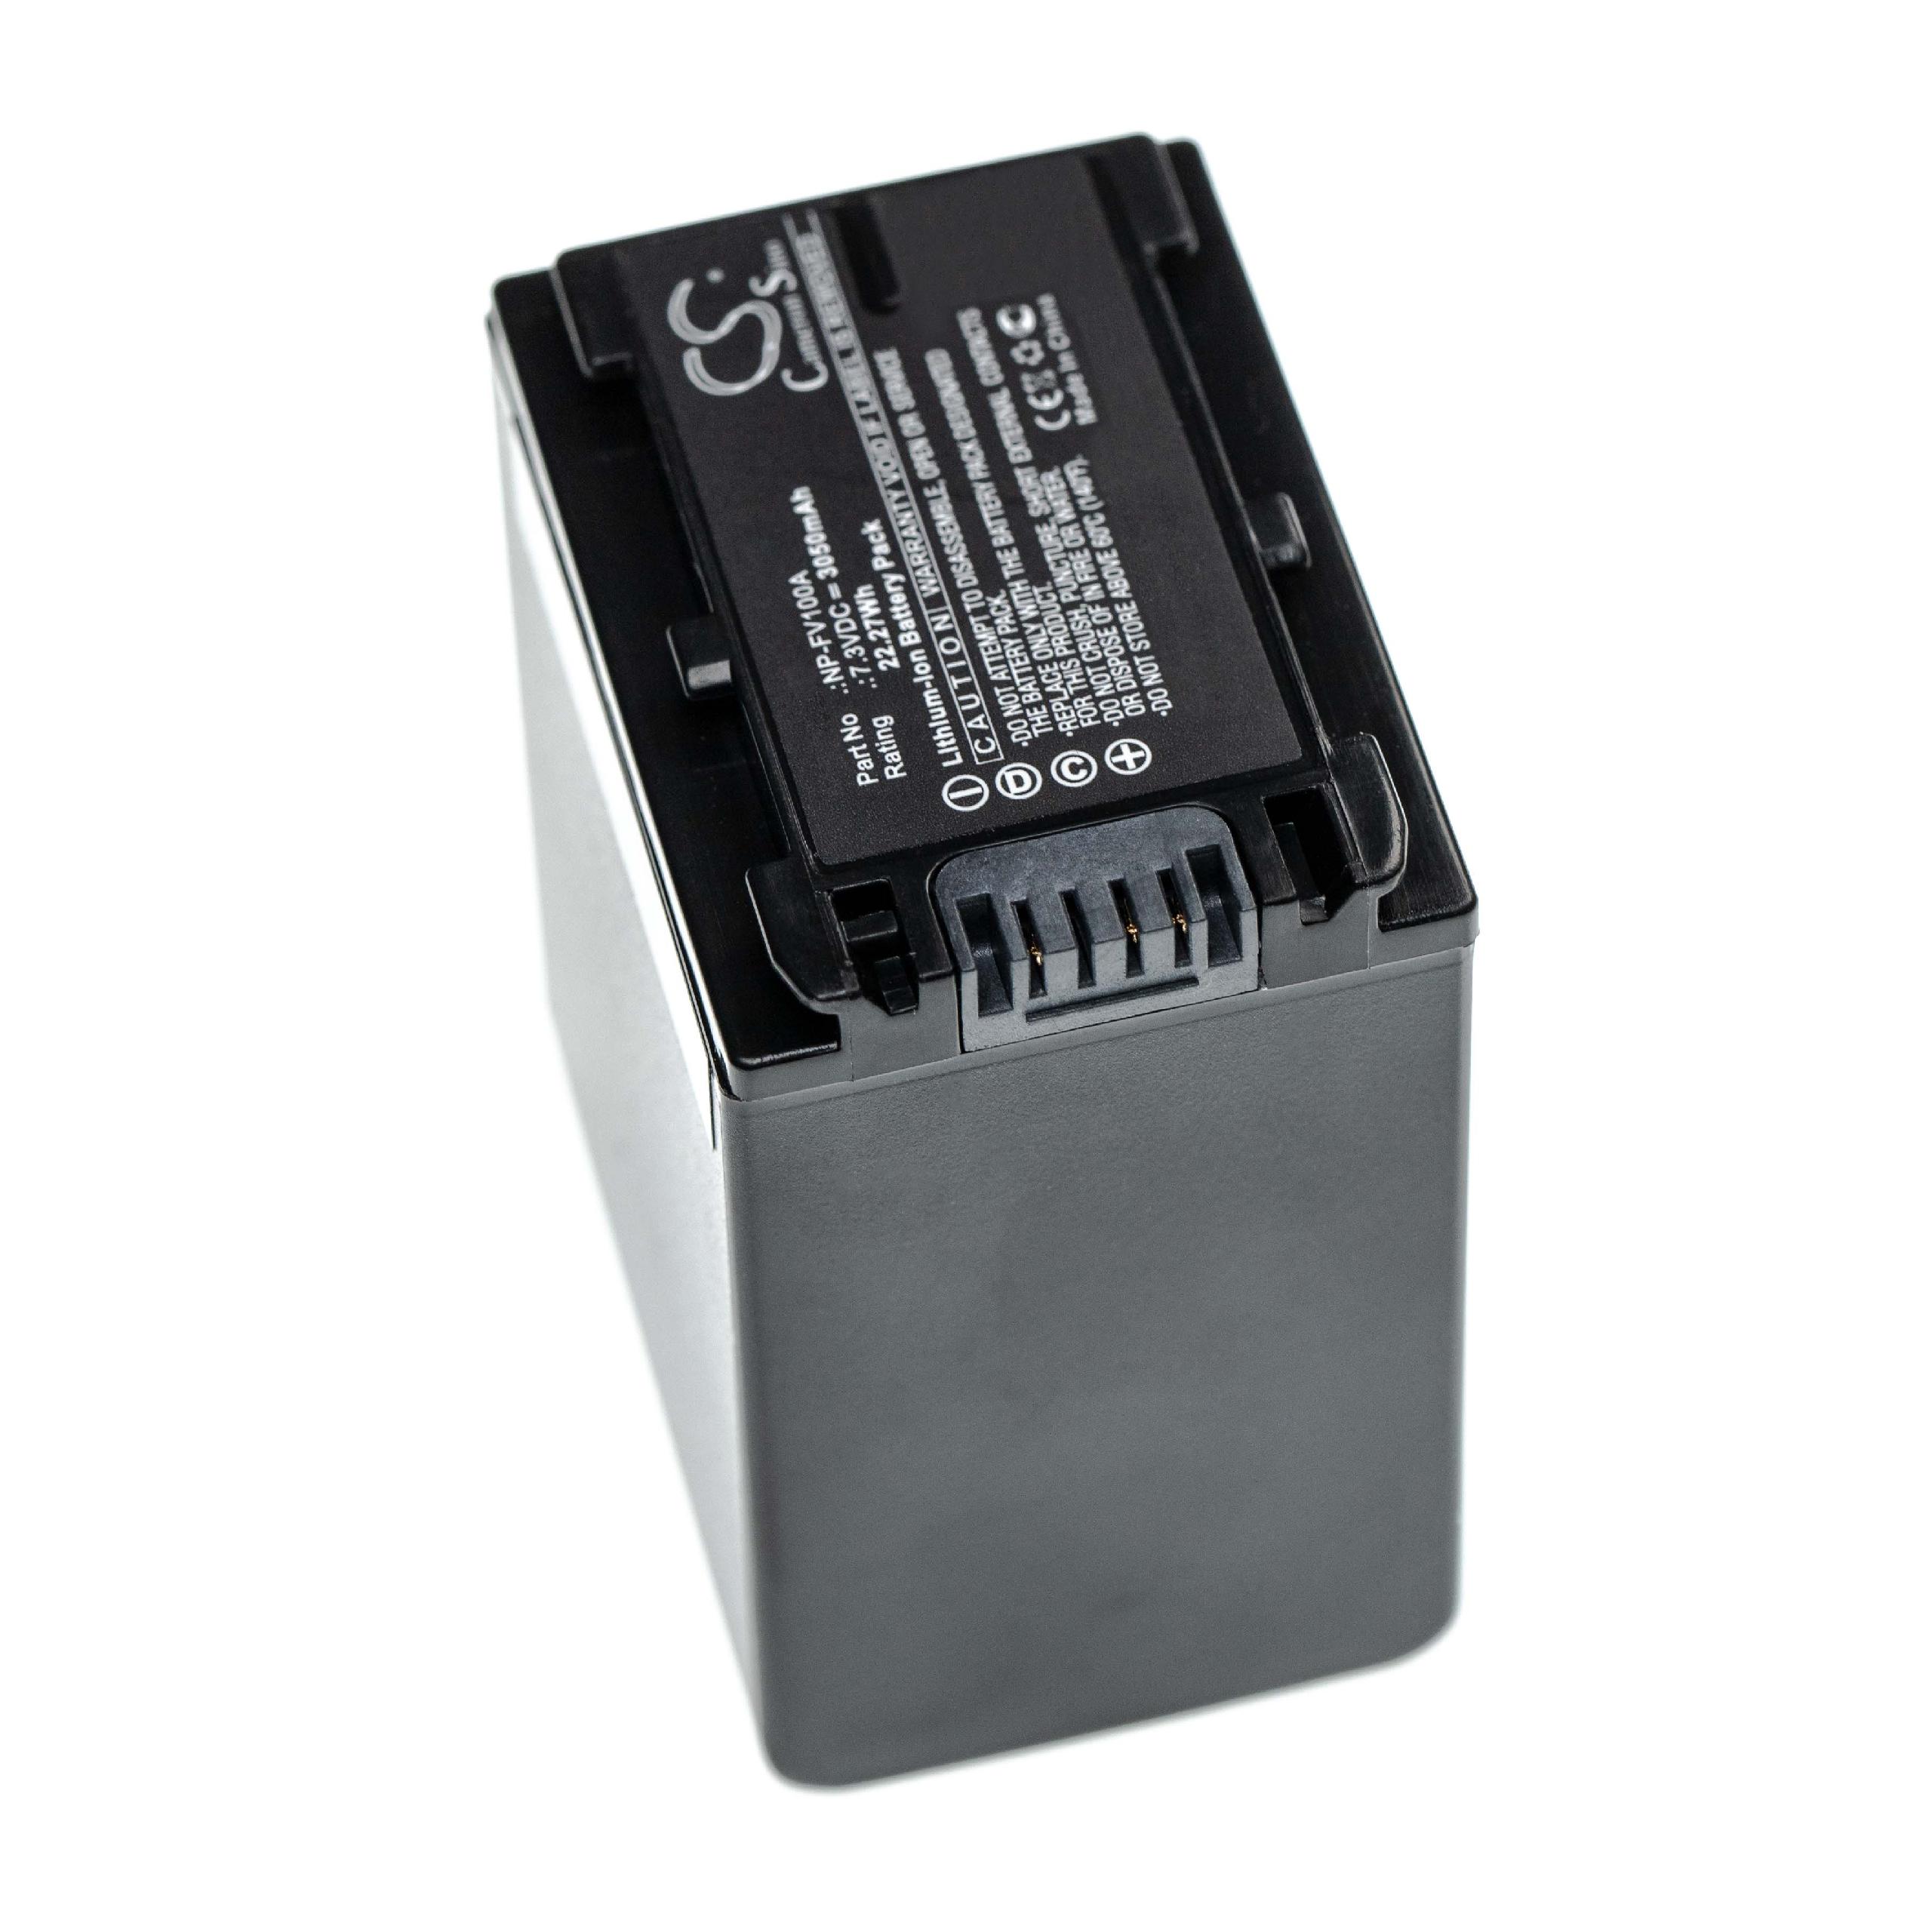 Batterie remplace Sony NP-FV100A pour caméscope - 3050mAh 7,3V Li-ion